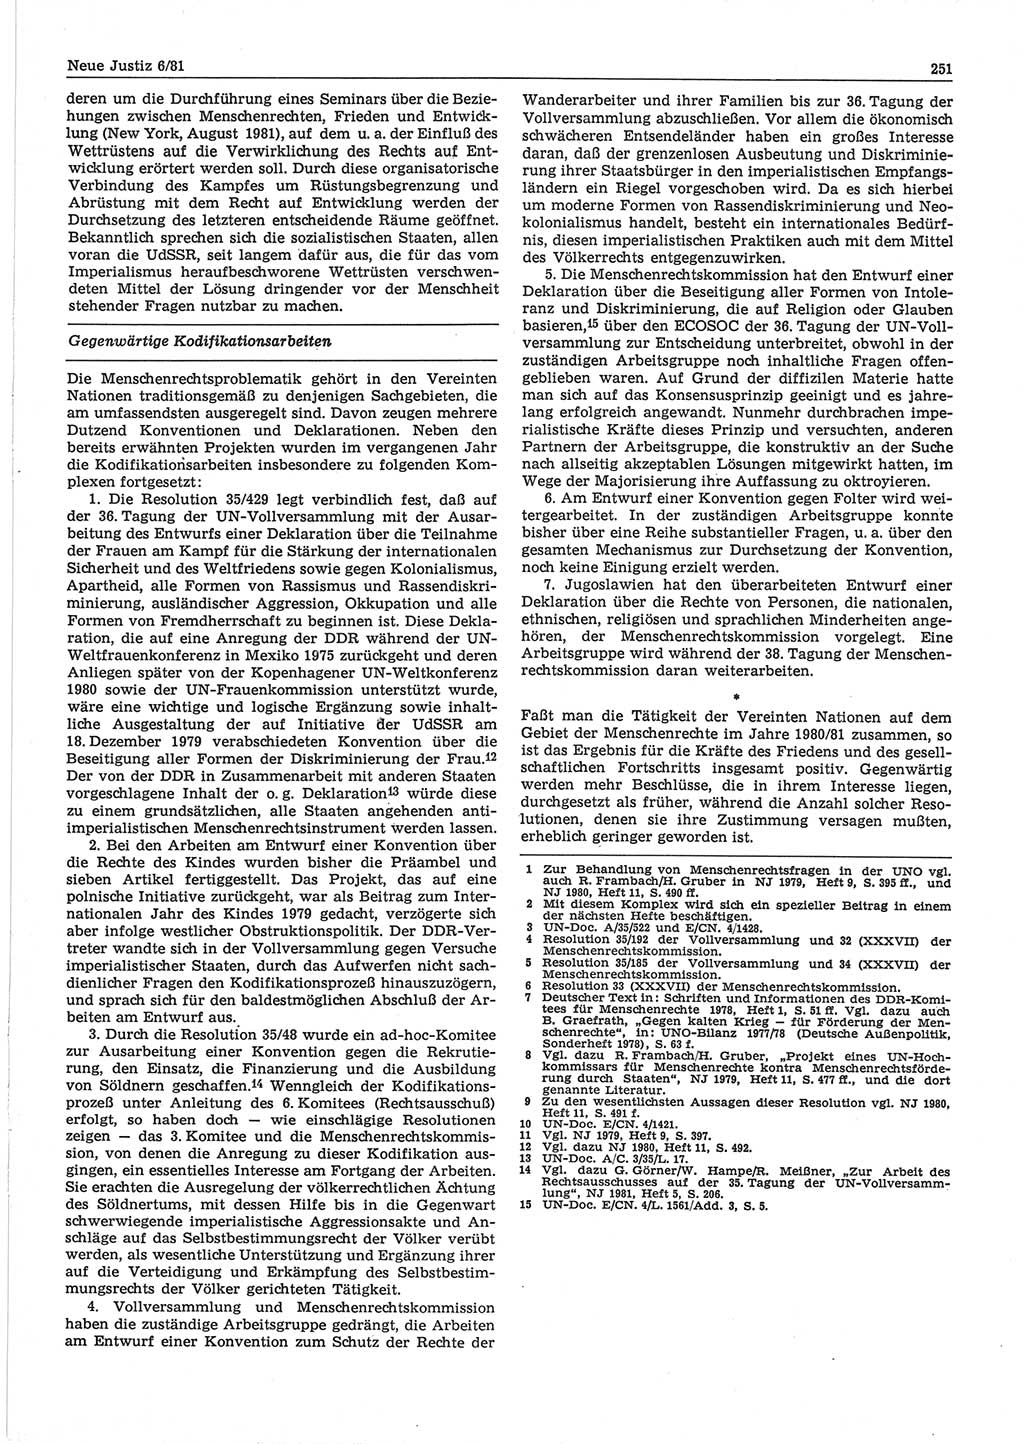 Neue Justiz (NJ), Zeitschrift für sozialistisches Recht und Gesetzlichkeit [Deutsche Demokratische Republik (DDR)], 35. Jahrgang 1981, Seite 251 (NJ DDR 1981, S. 251)